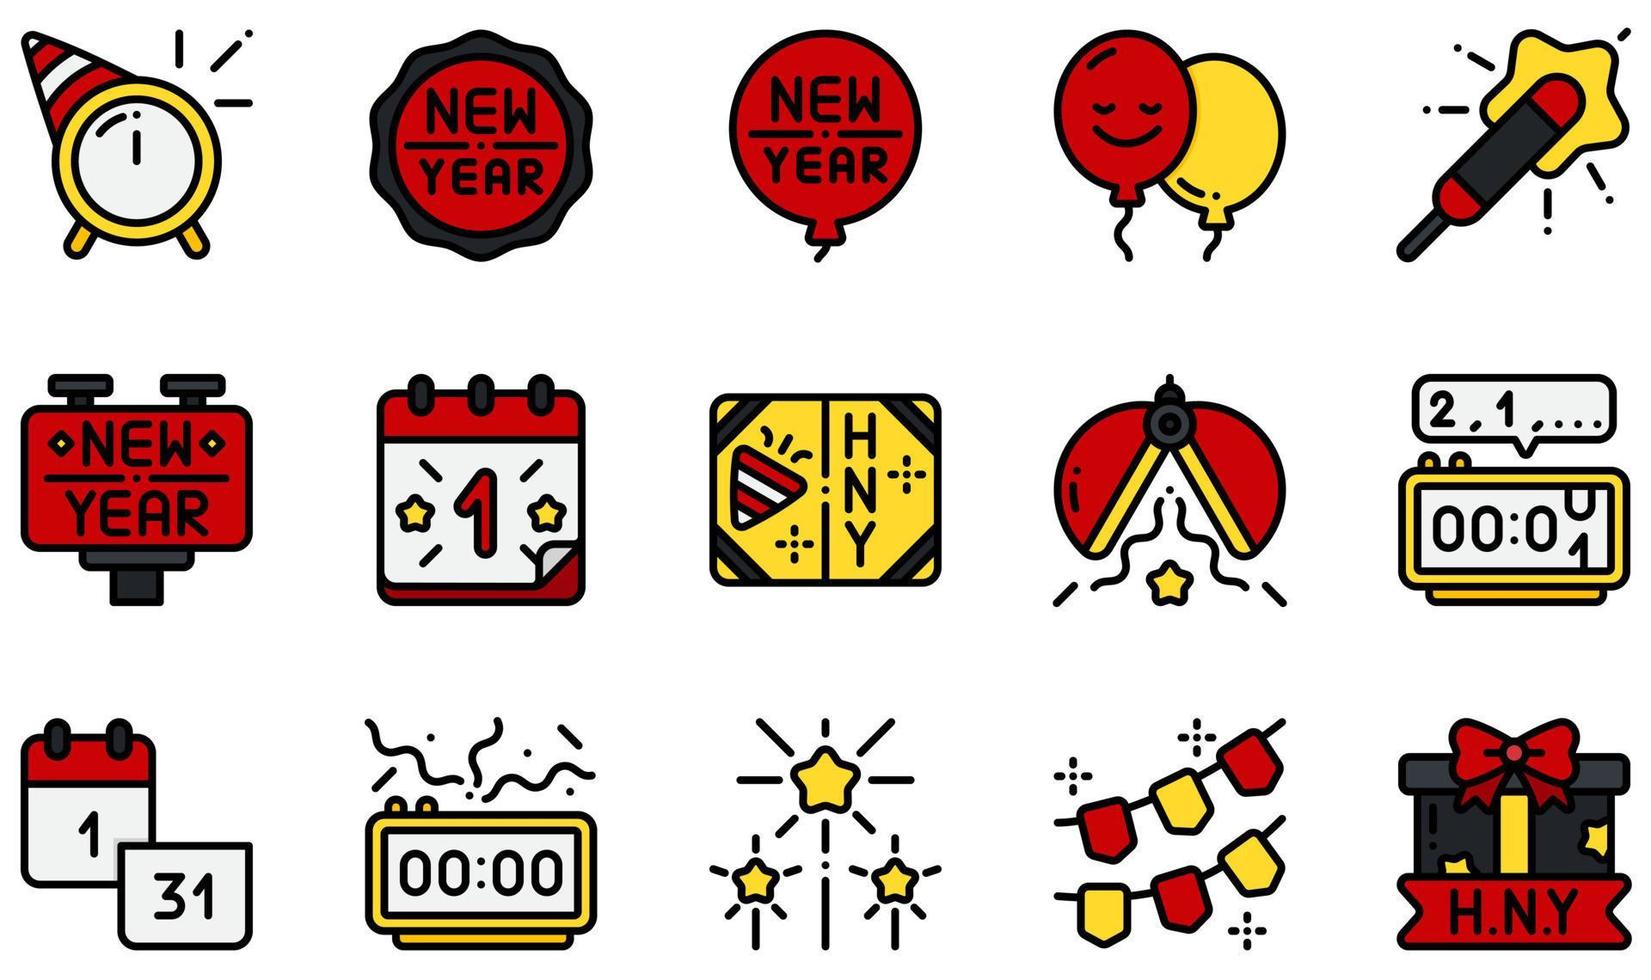 ensemble d'icônes vectorielles liées au nouvel an. contient des icônes telles que badge, ballon, calendrier, carte, compte à rebours, feux d'artifice et plus encore. vecteur